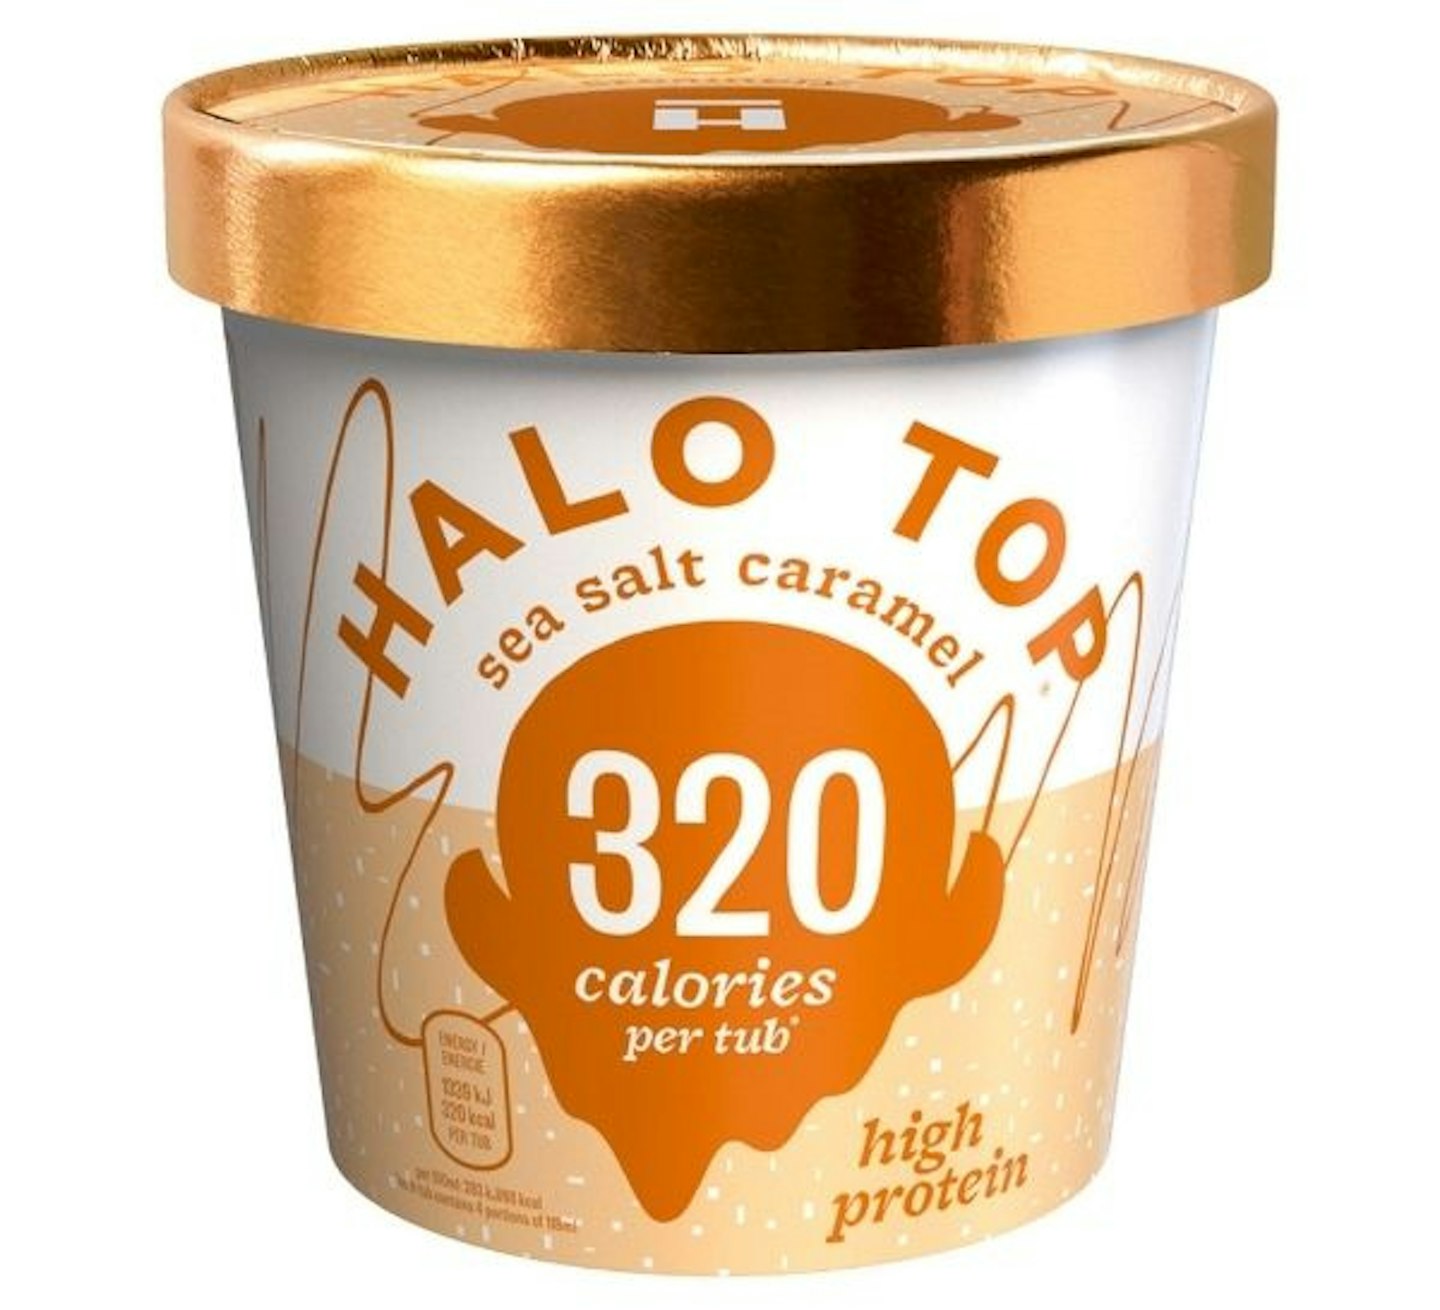 Halo Top low calorie sea salt caramel ice cream